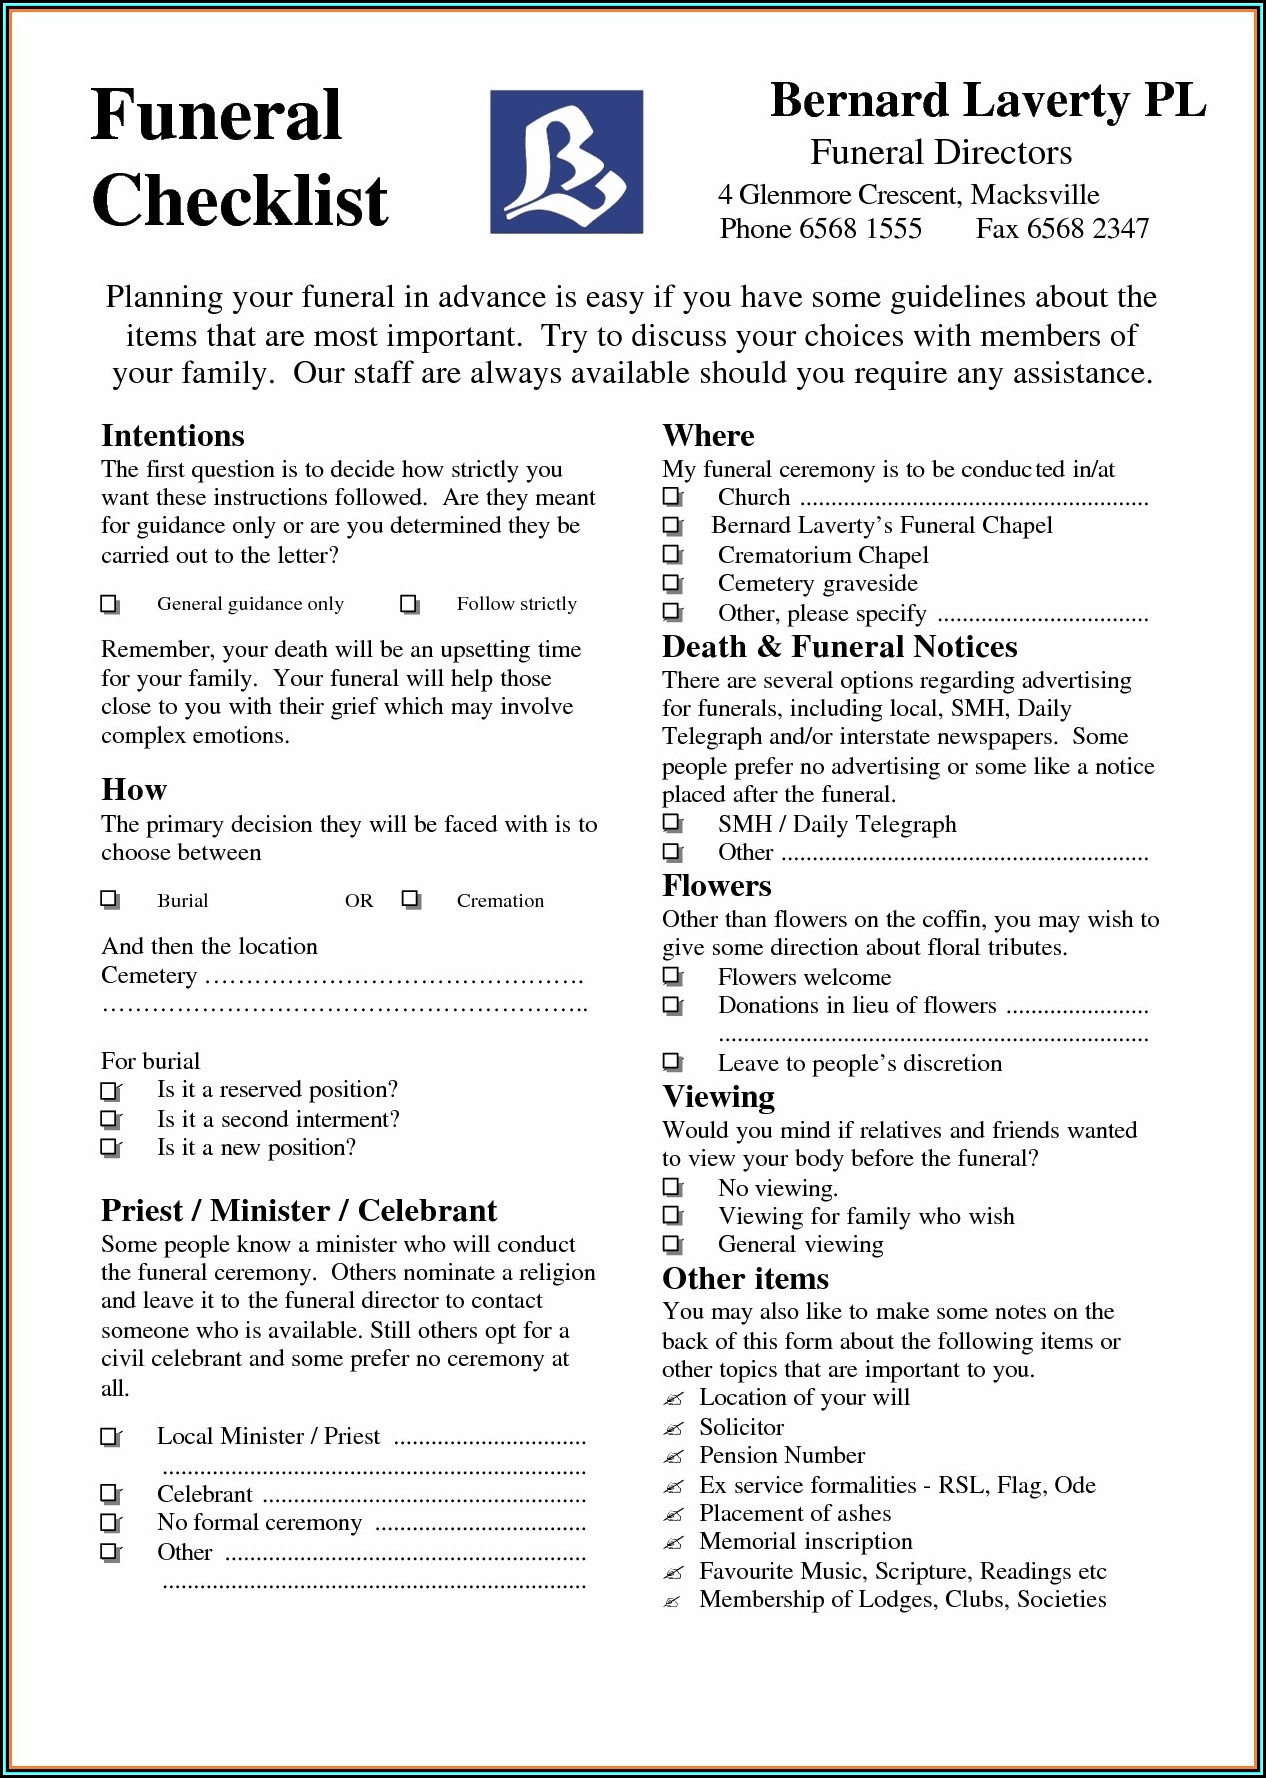 Funeral Checklist Template Australia